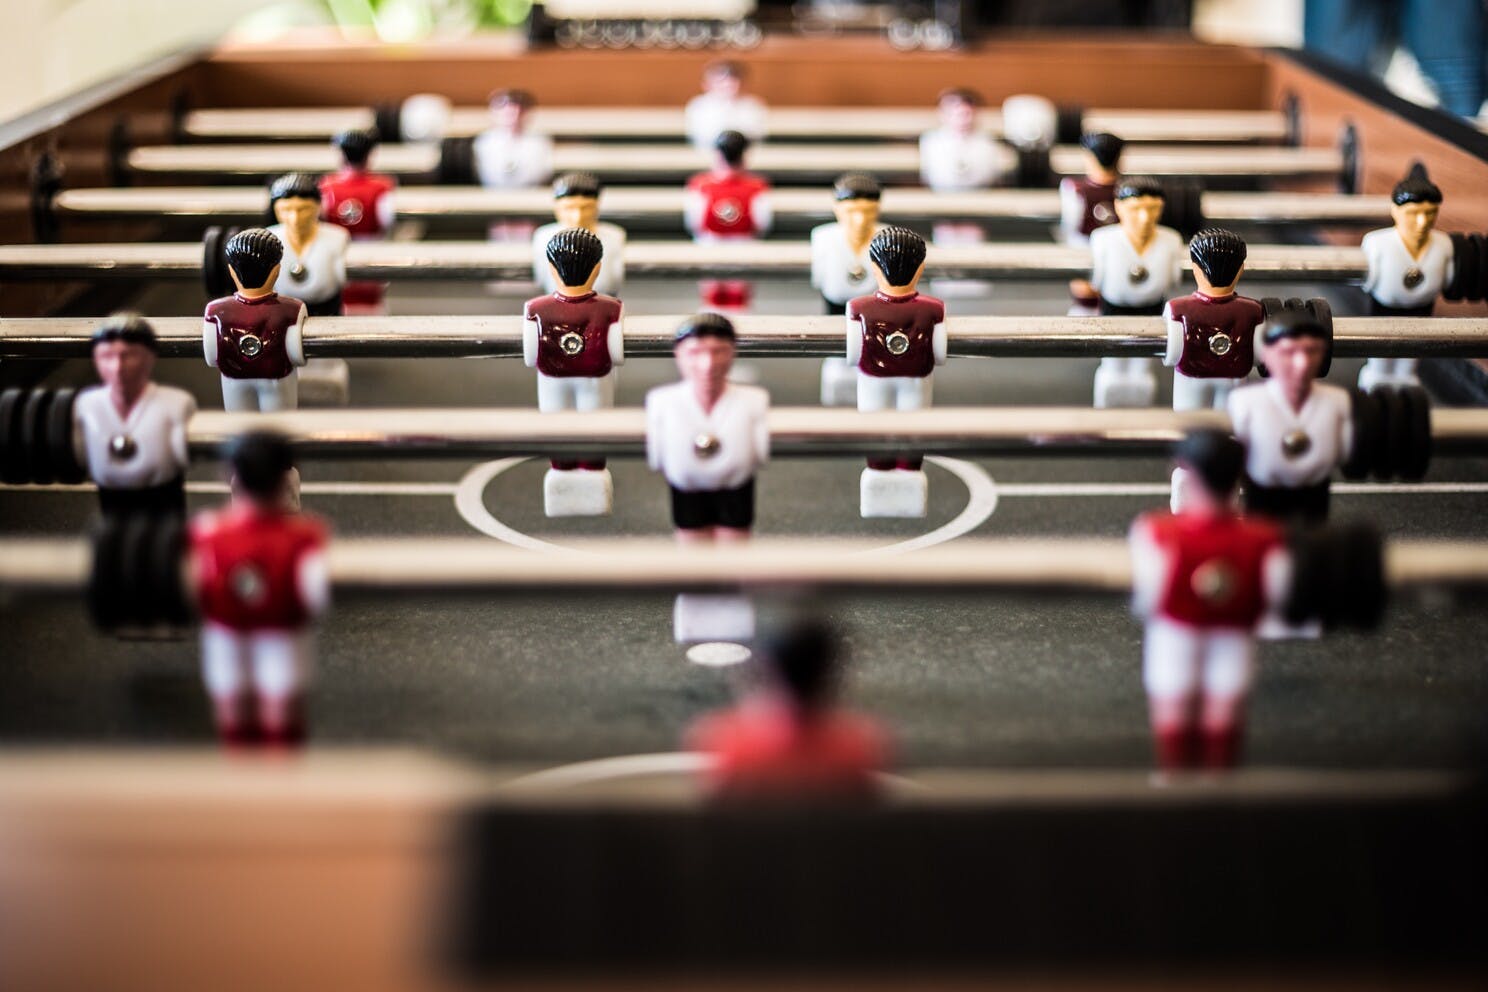 Muestra una vista rasante de la superficie de la mesa de futbolito, en la que los jugadores de plástico están sobre una barra cromada.